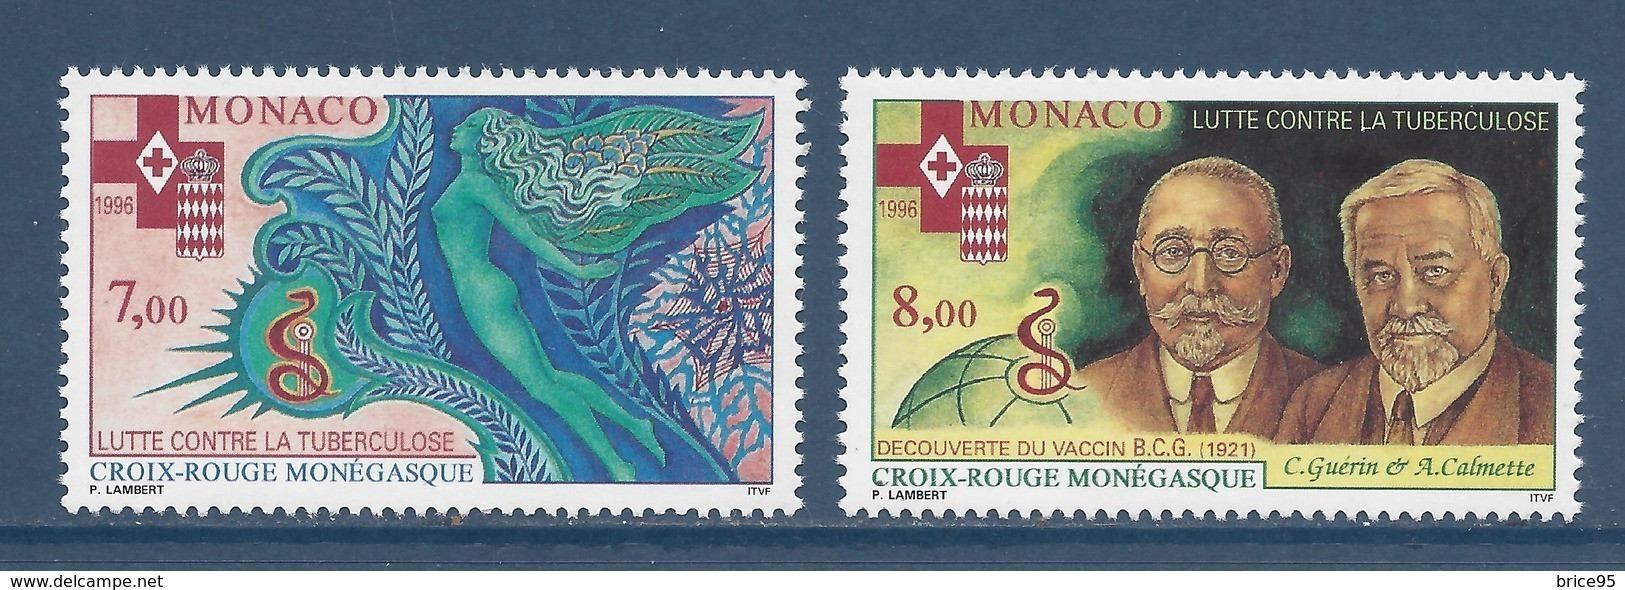 Monaco - YT N° 2063 Et 2064 ** - Neuf Sans Charnière - 1996 - Nuevos